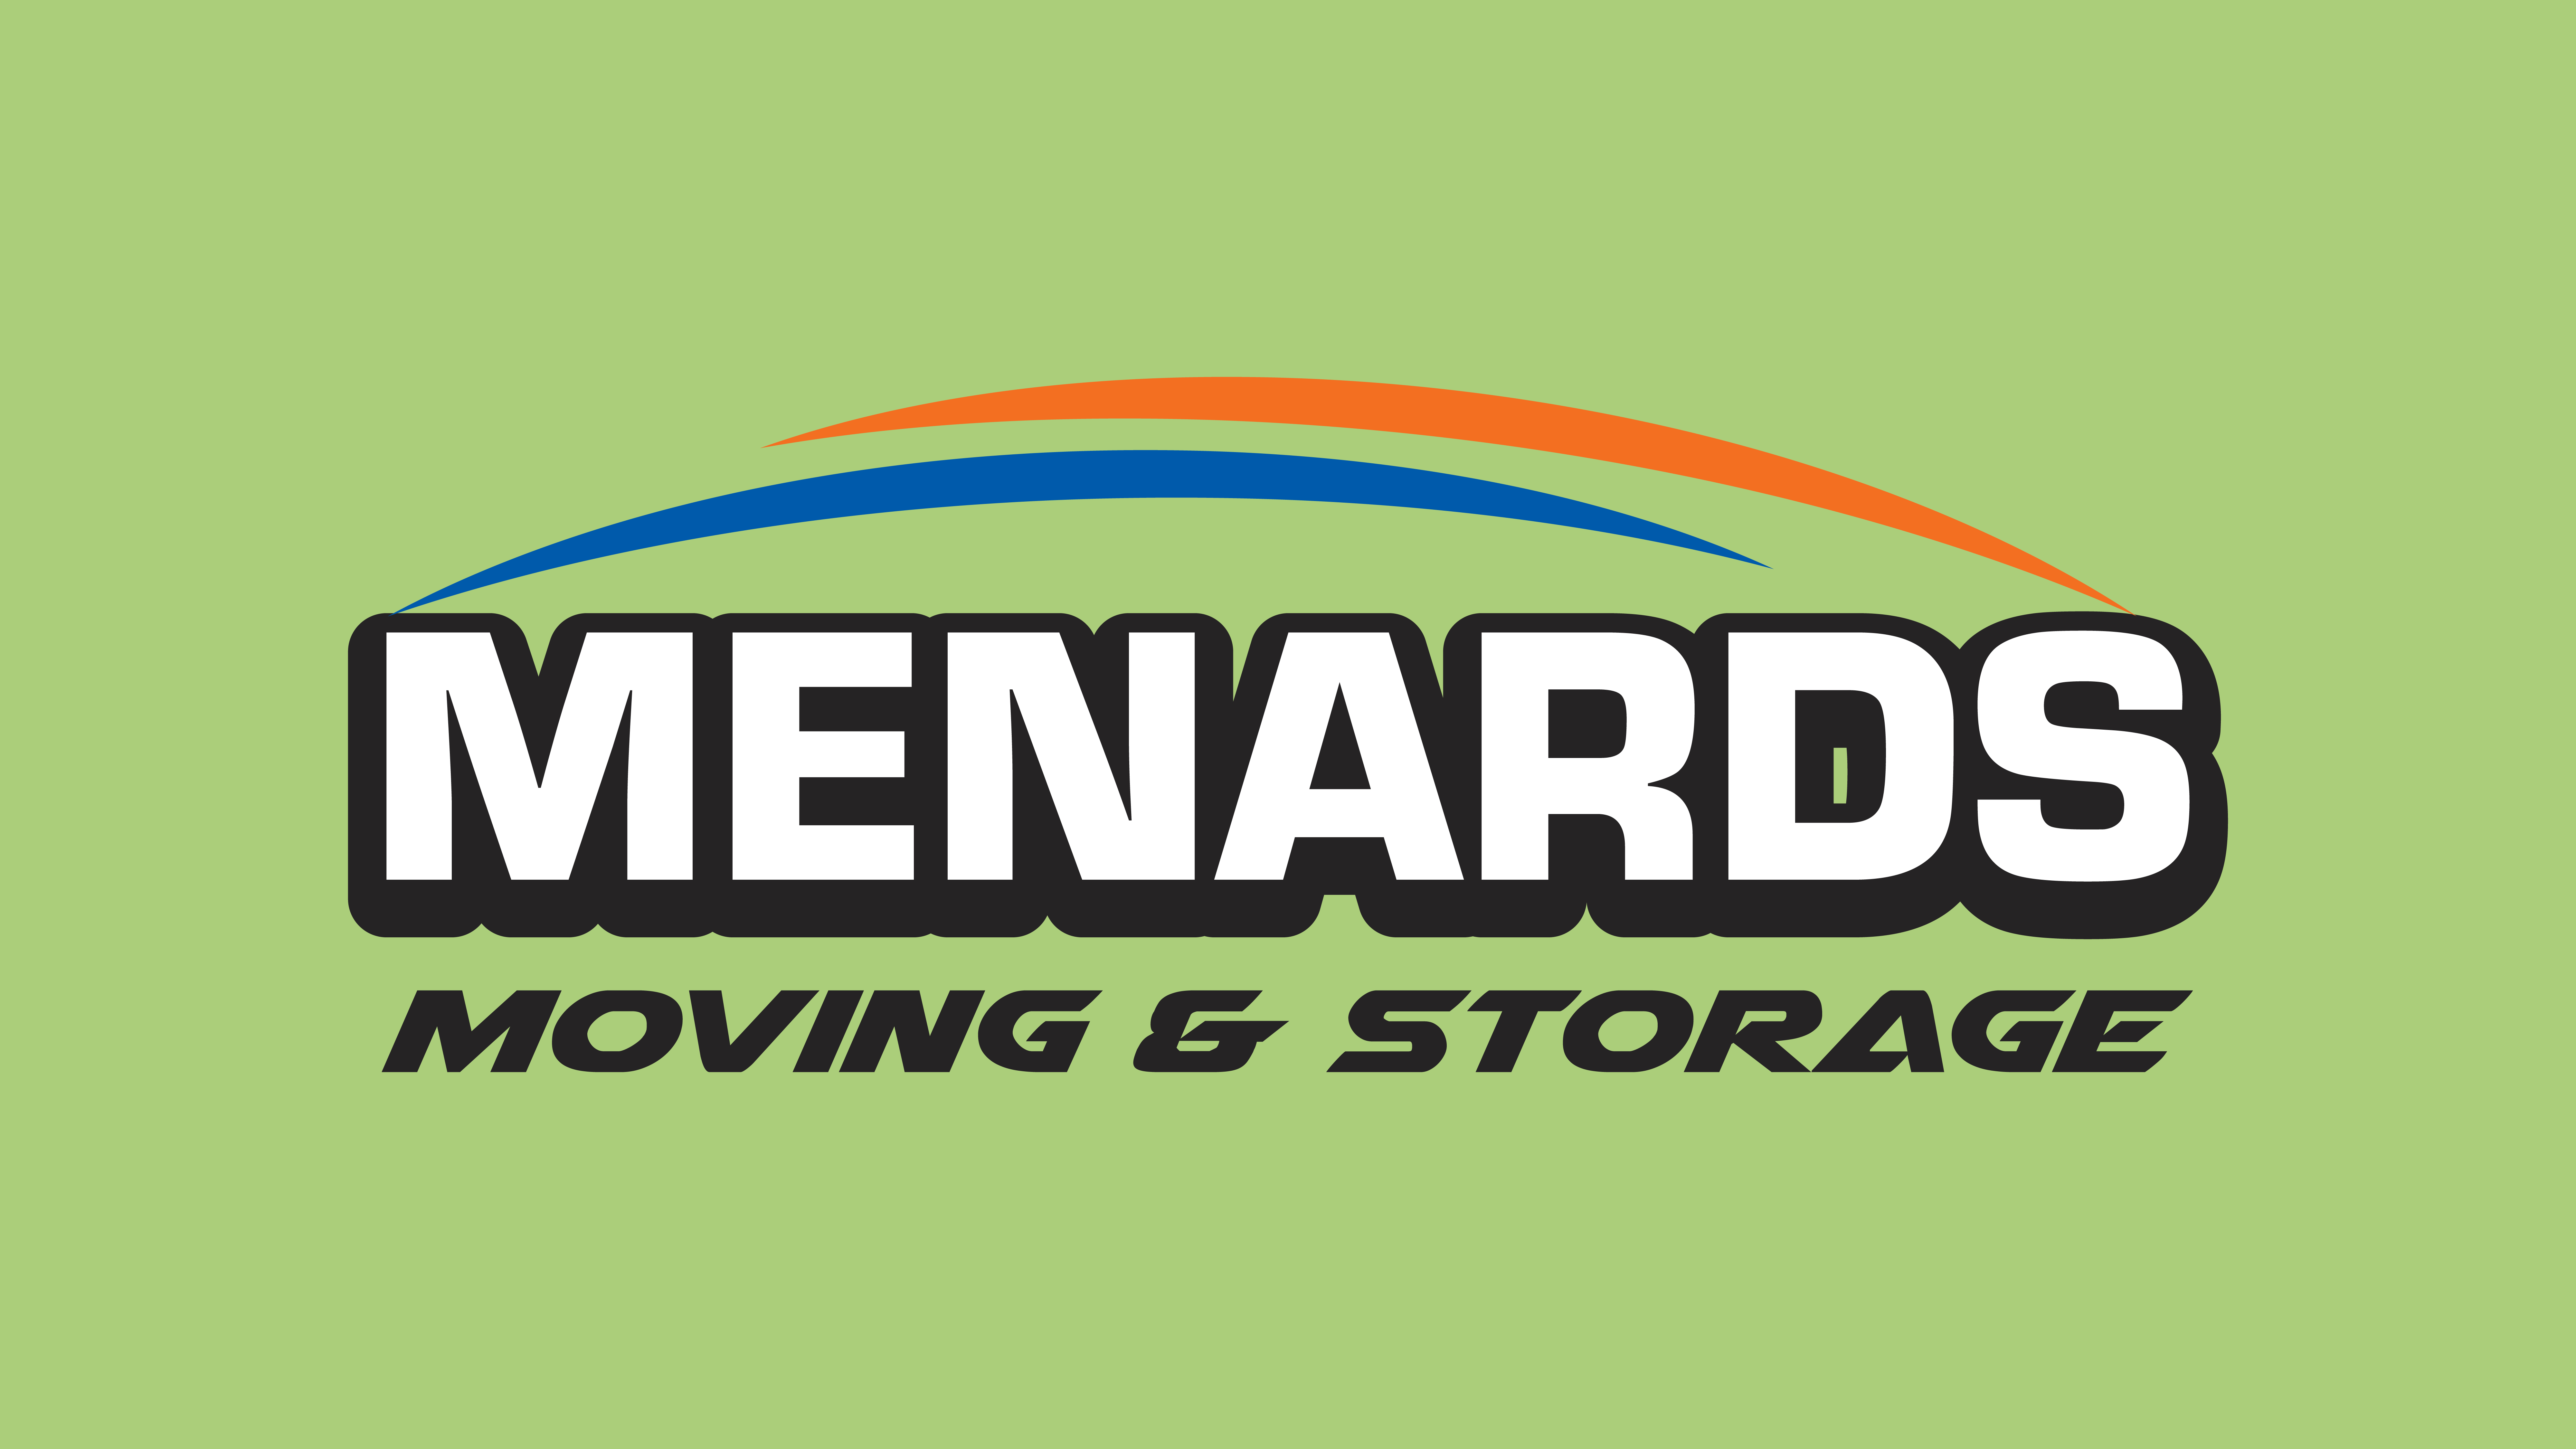 Menards Moving & Storage